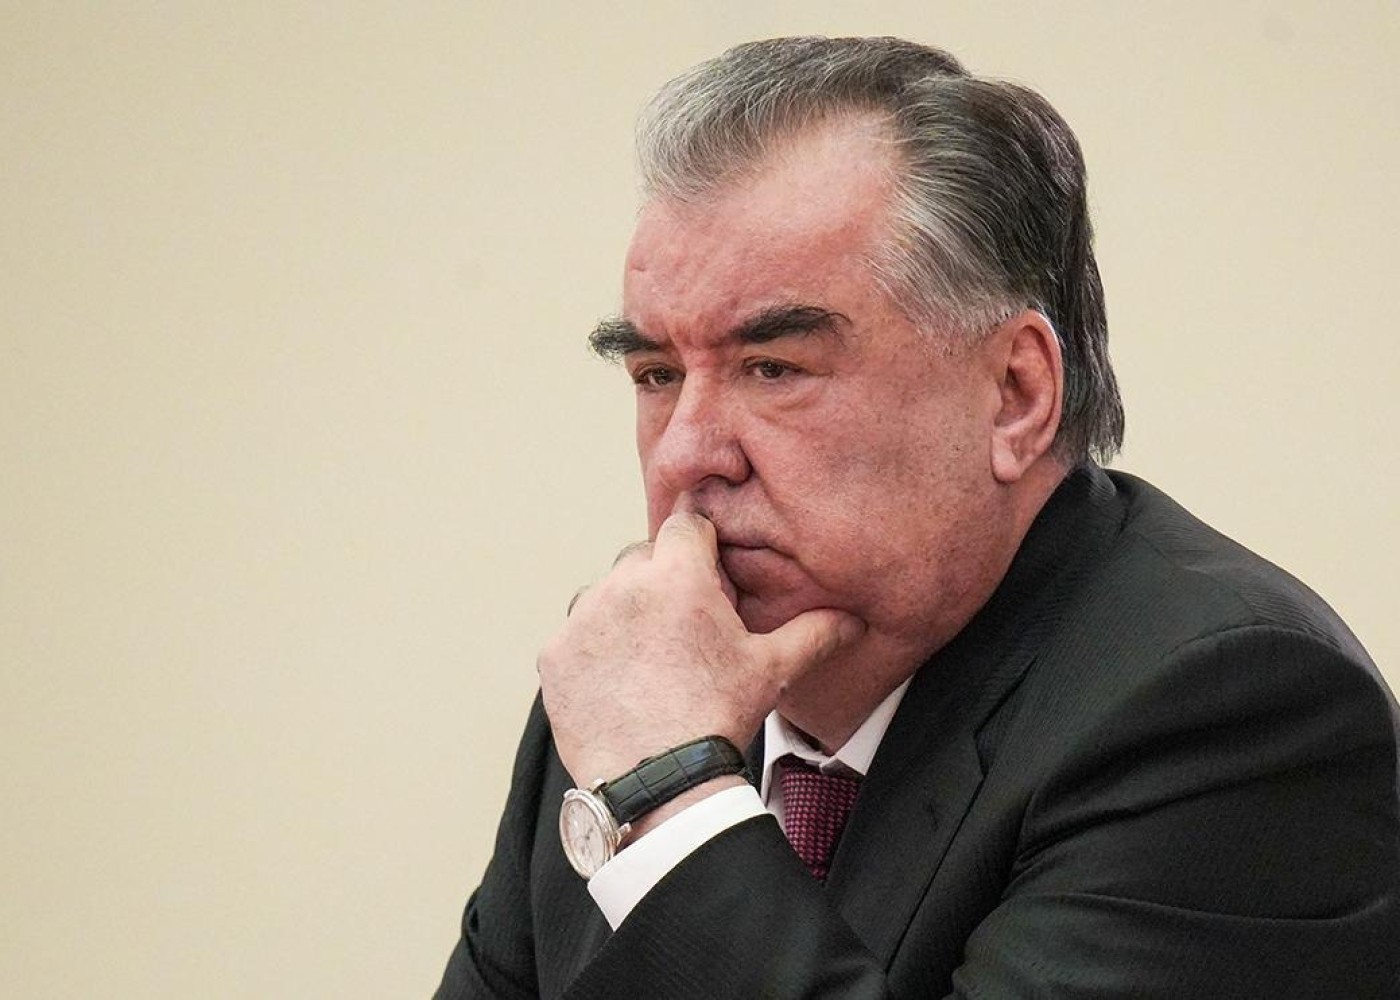 Tacikistan prezidenti valideynlərəçağırış etdi